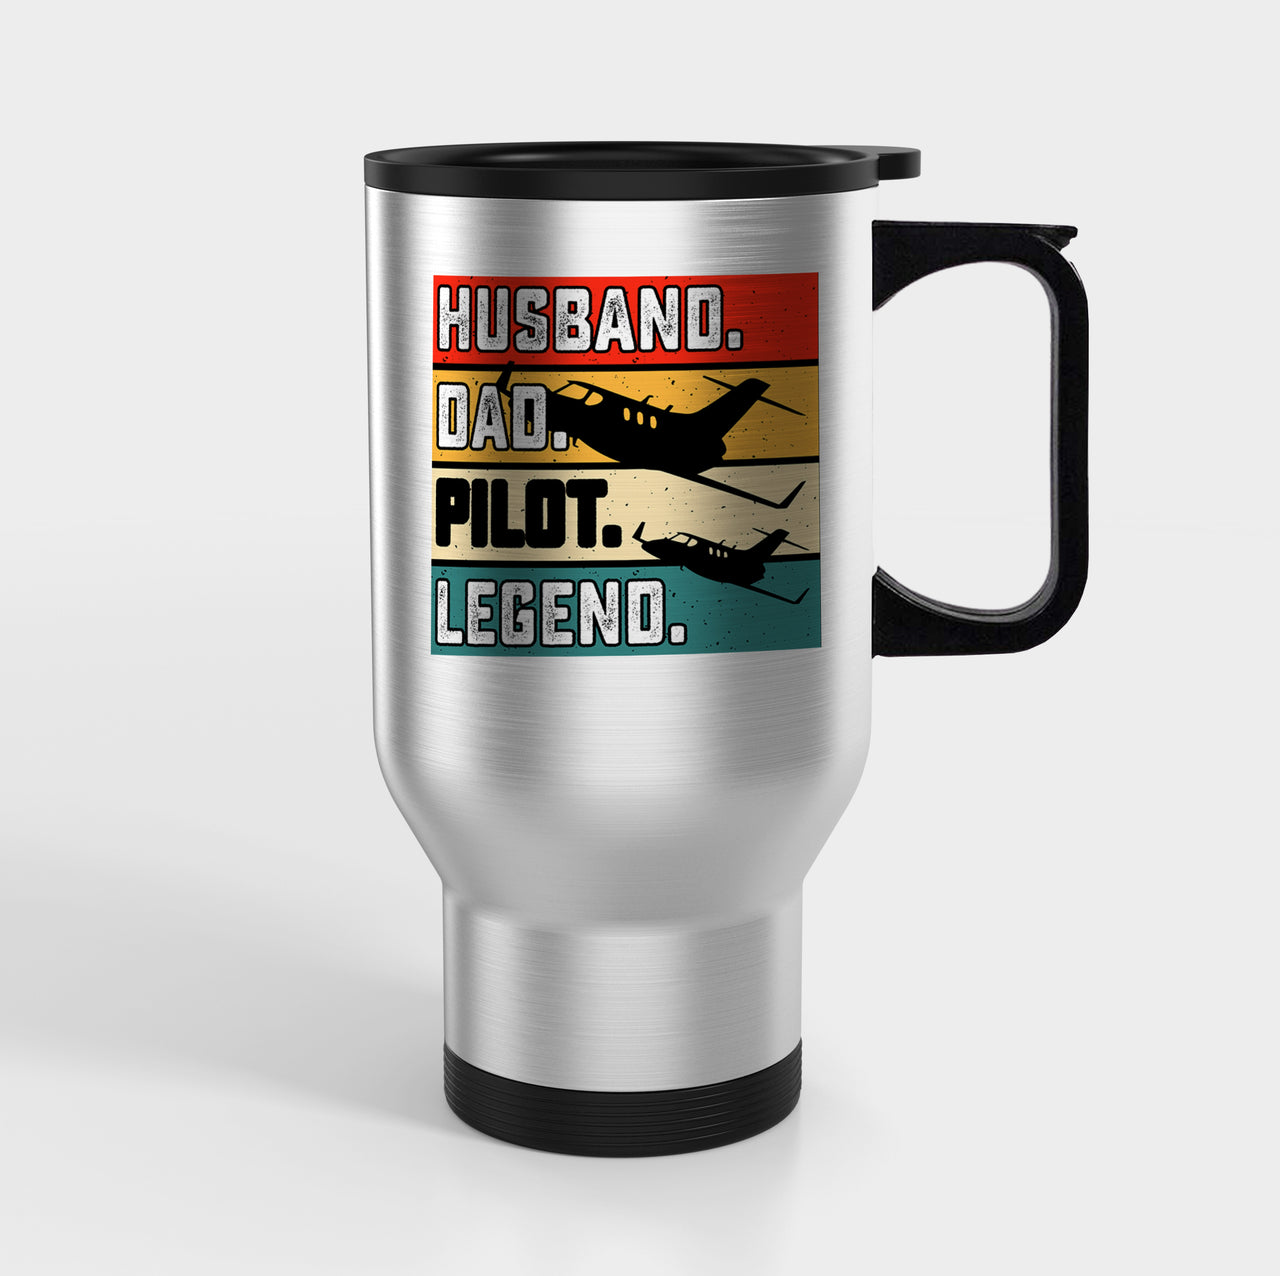 Husband & Dad & Pilot & Legend Designed Travel Mugs (With Holder)